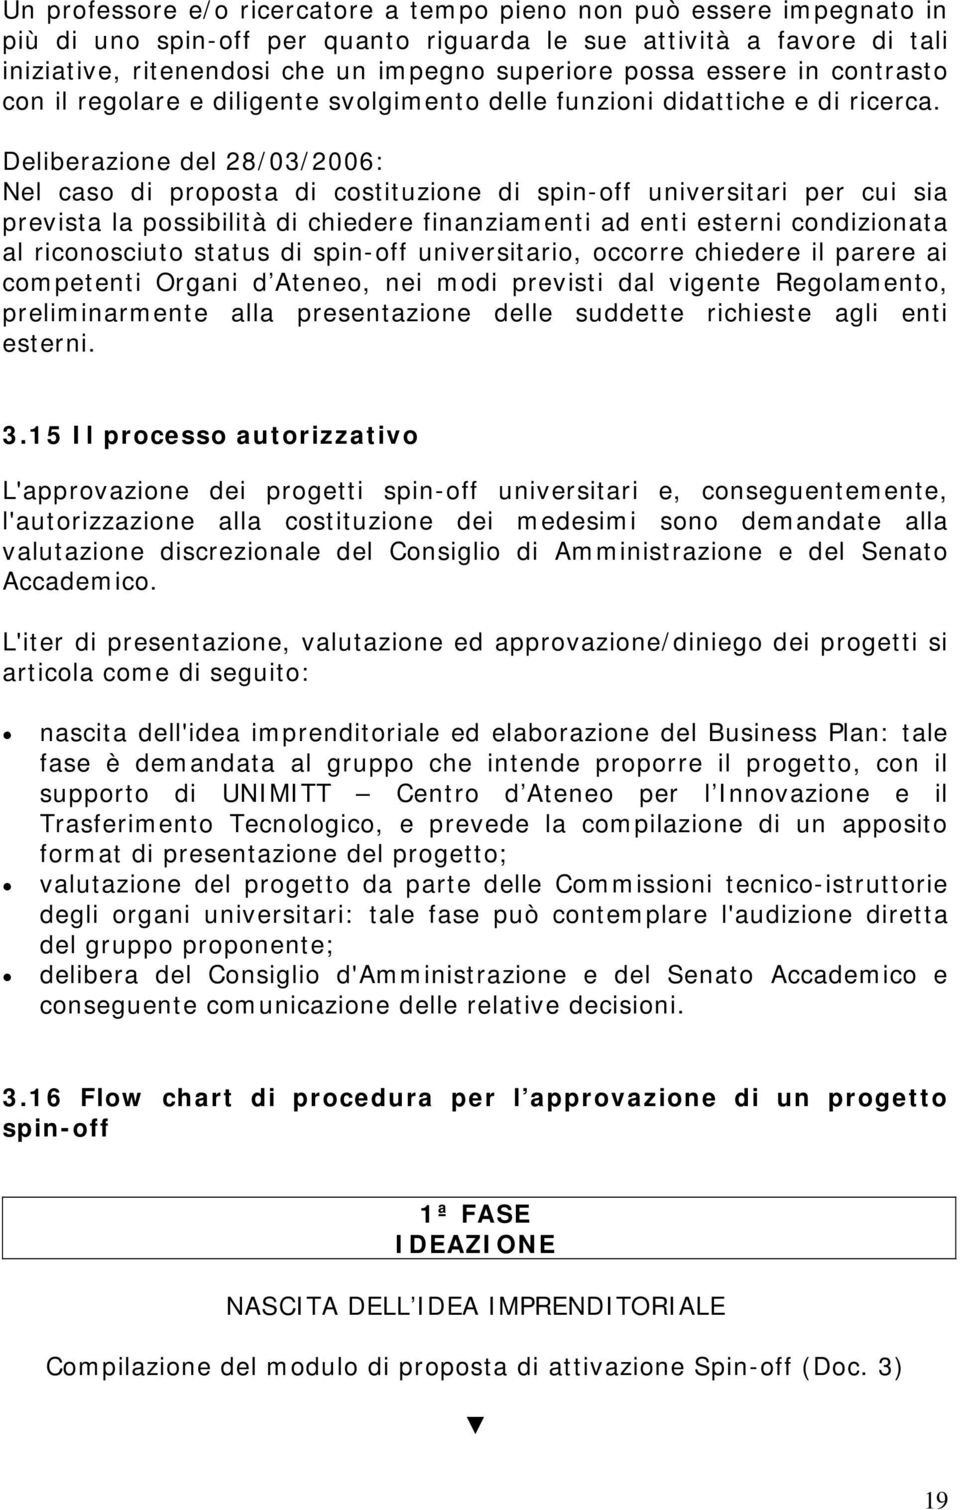 Deliberazione del 28/03/2006: Nel caso di proposta di costituzione di spin-off universitari per cui sia prevista la possibilità di chiedere finanziamenti ad enti esterni condizionata al riconosciuto